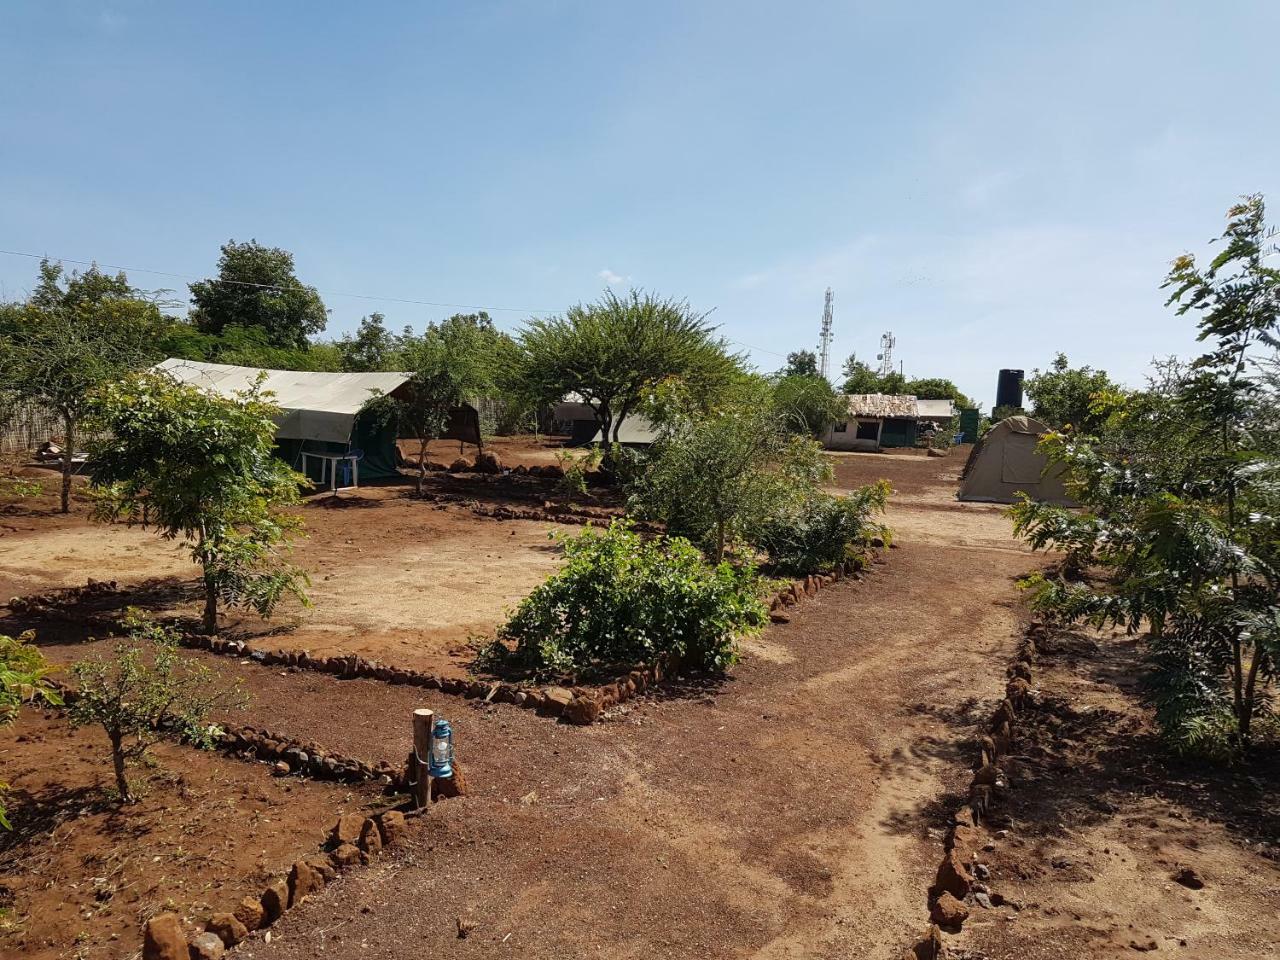 ホテルKizumba Camp Site Manyara エクステリア 写真